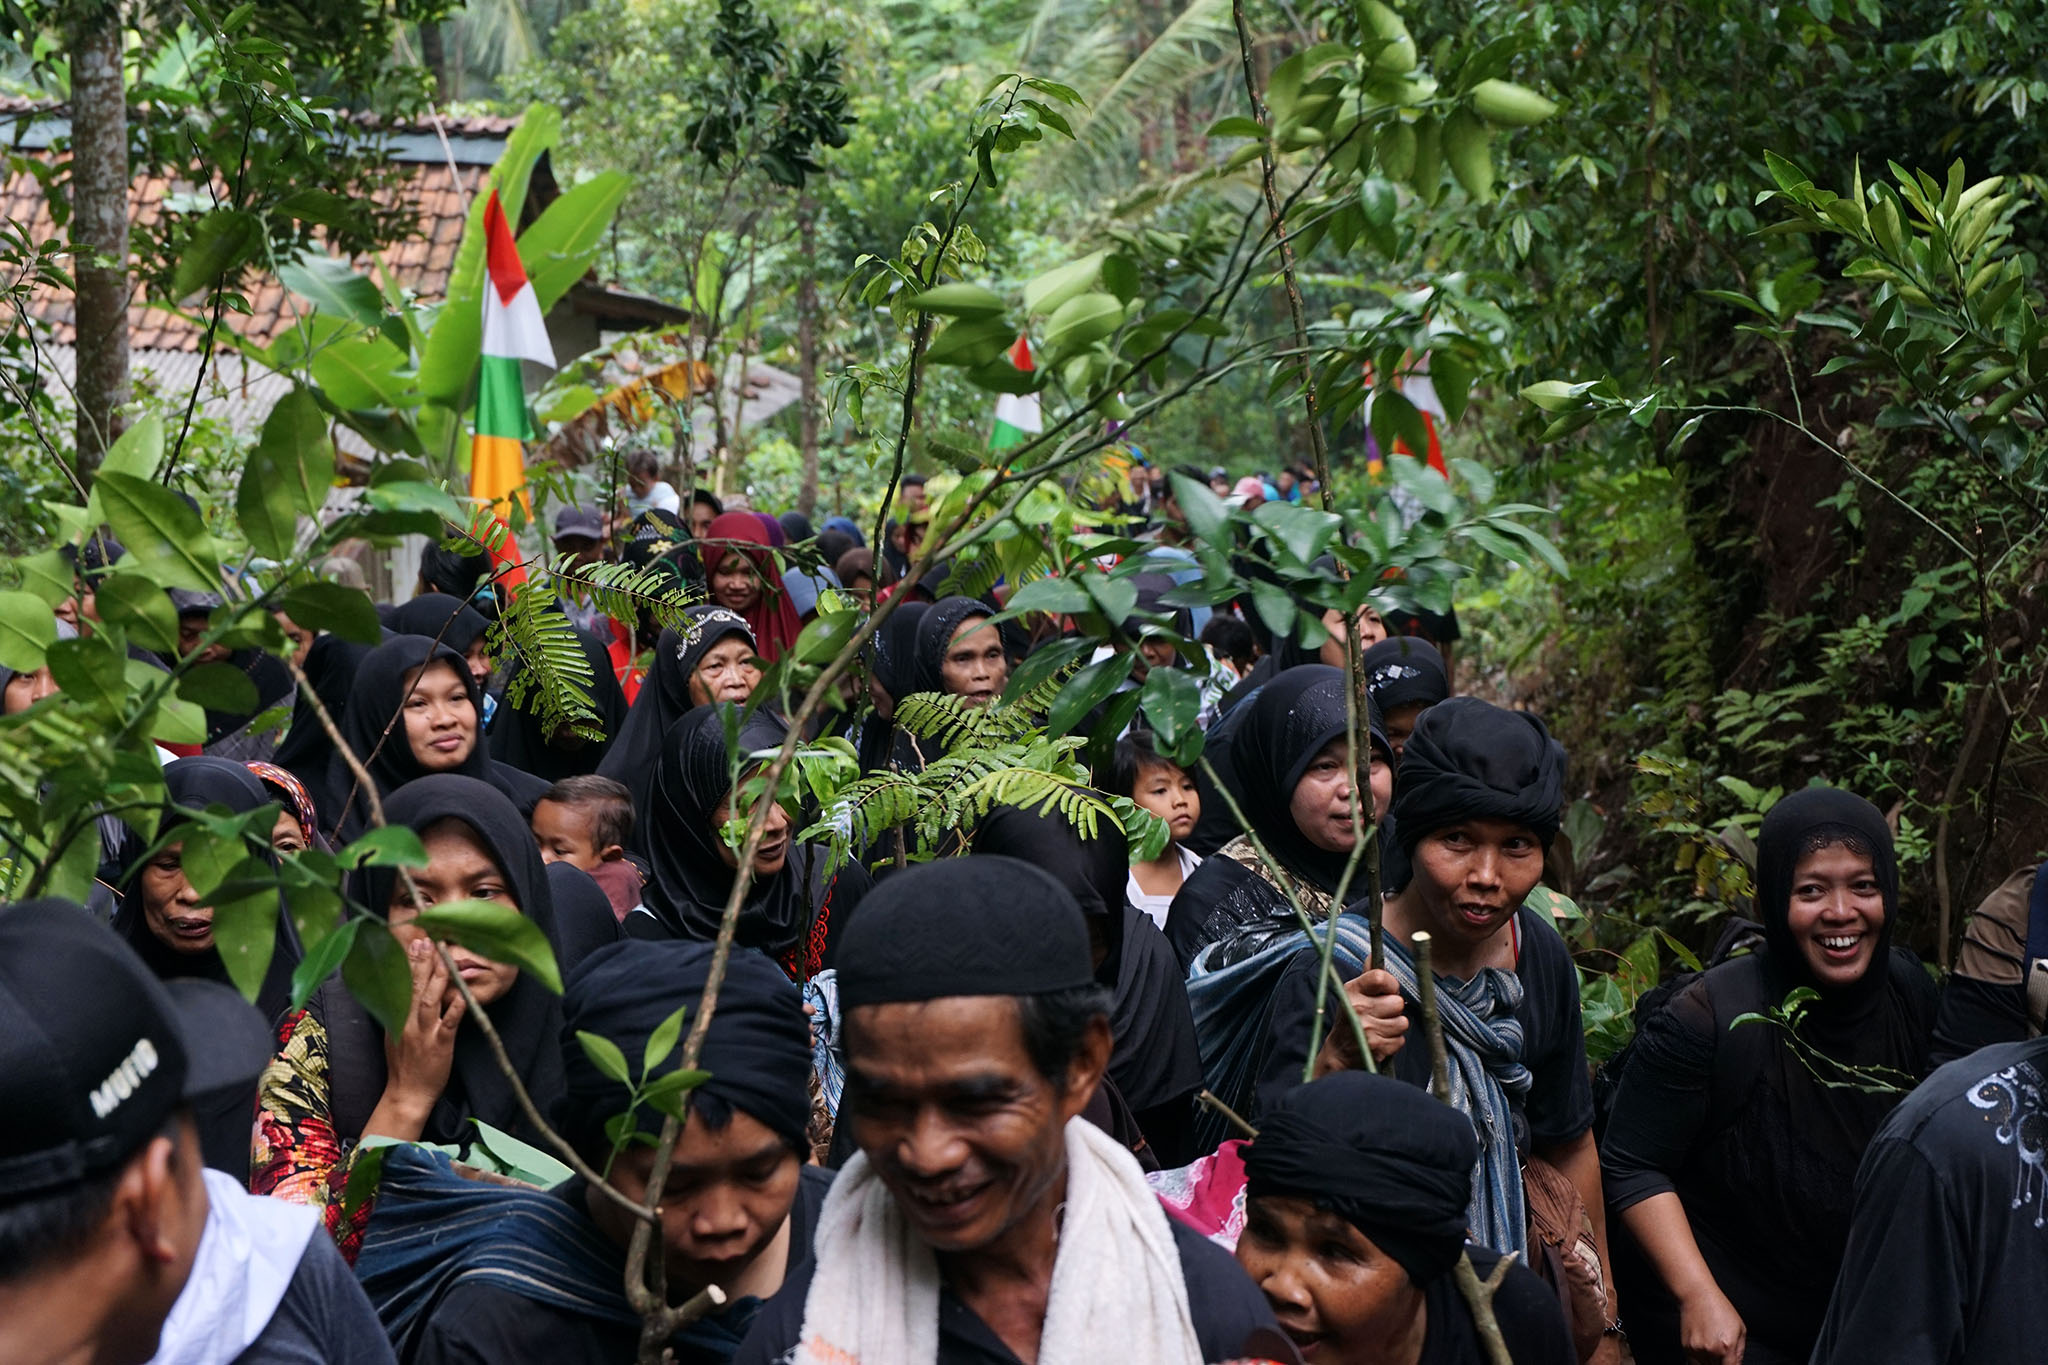 Dengan wajah berseri-seri, warga Desa Sokawera, Cilongok, Banyumas, Jateng pada Sabtu (21/4/2018) membawa bibit pohon untuk ditanam | Foto : L Darmawan/Mongabay Indonesia